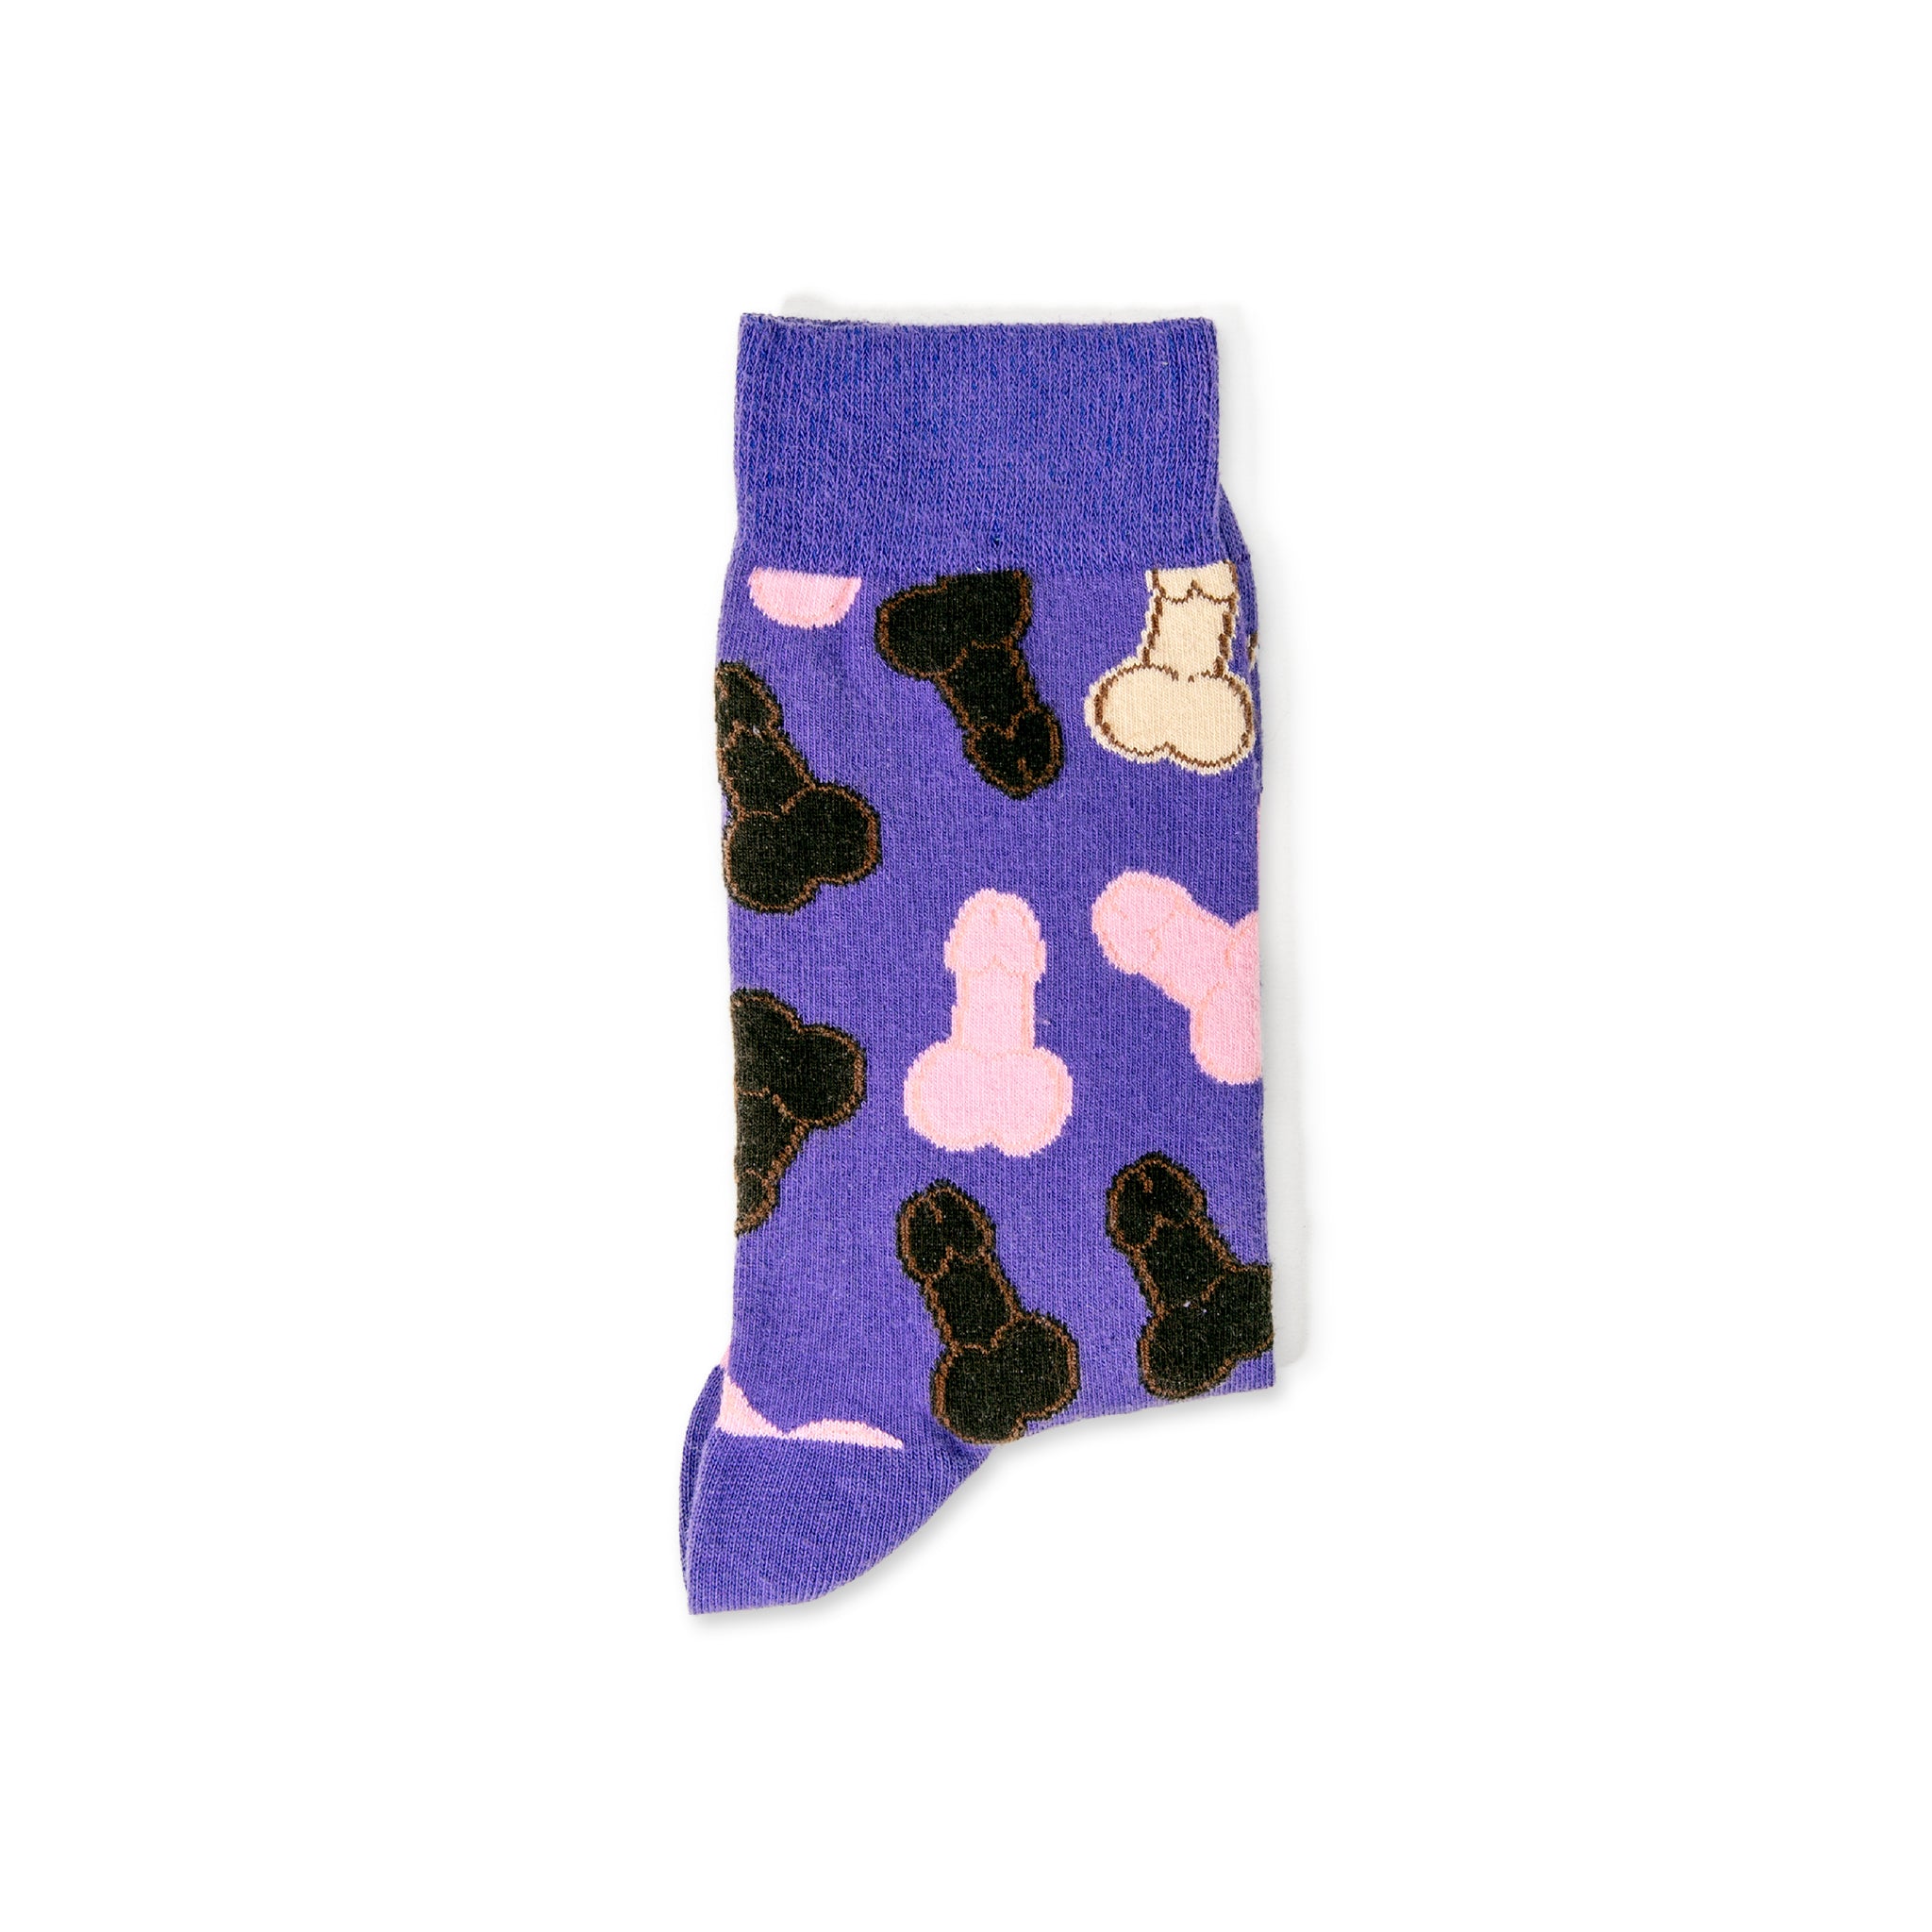 Patterned Purple Socks: Rubber Duck